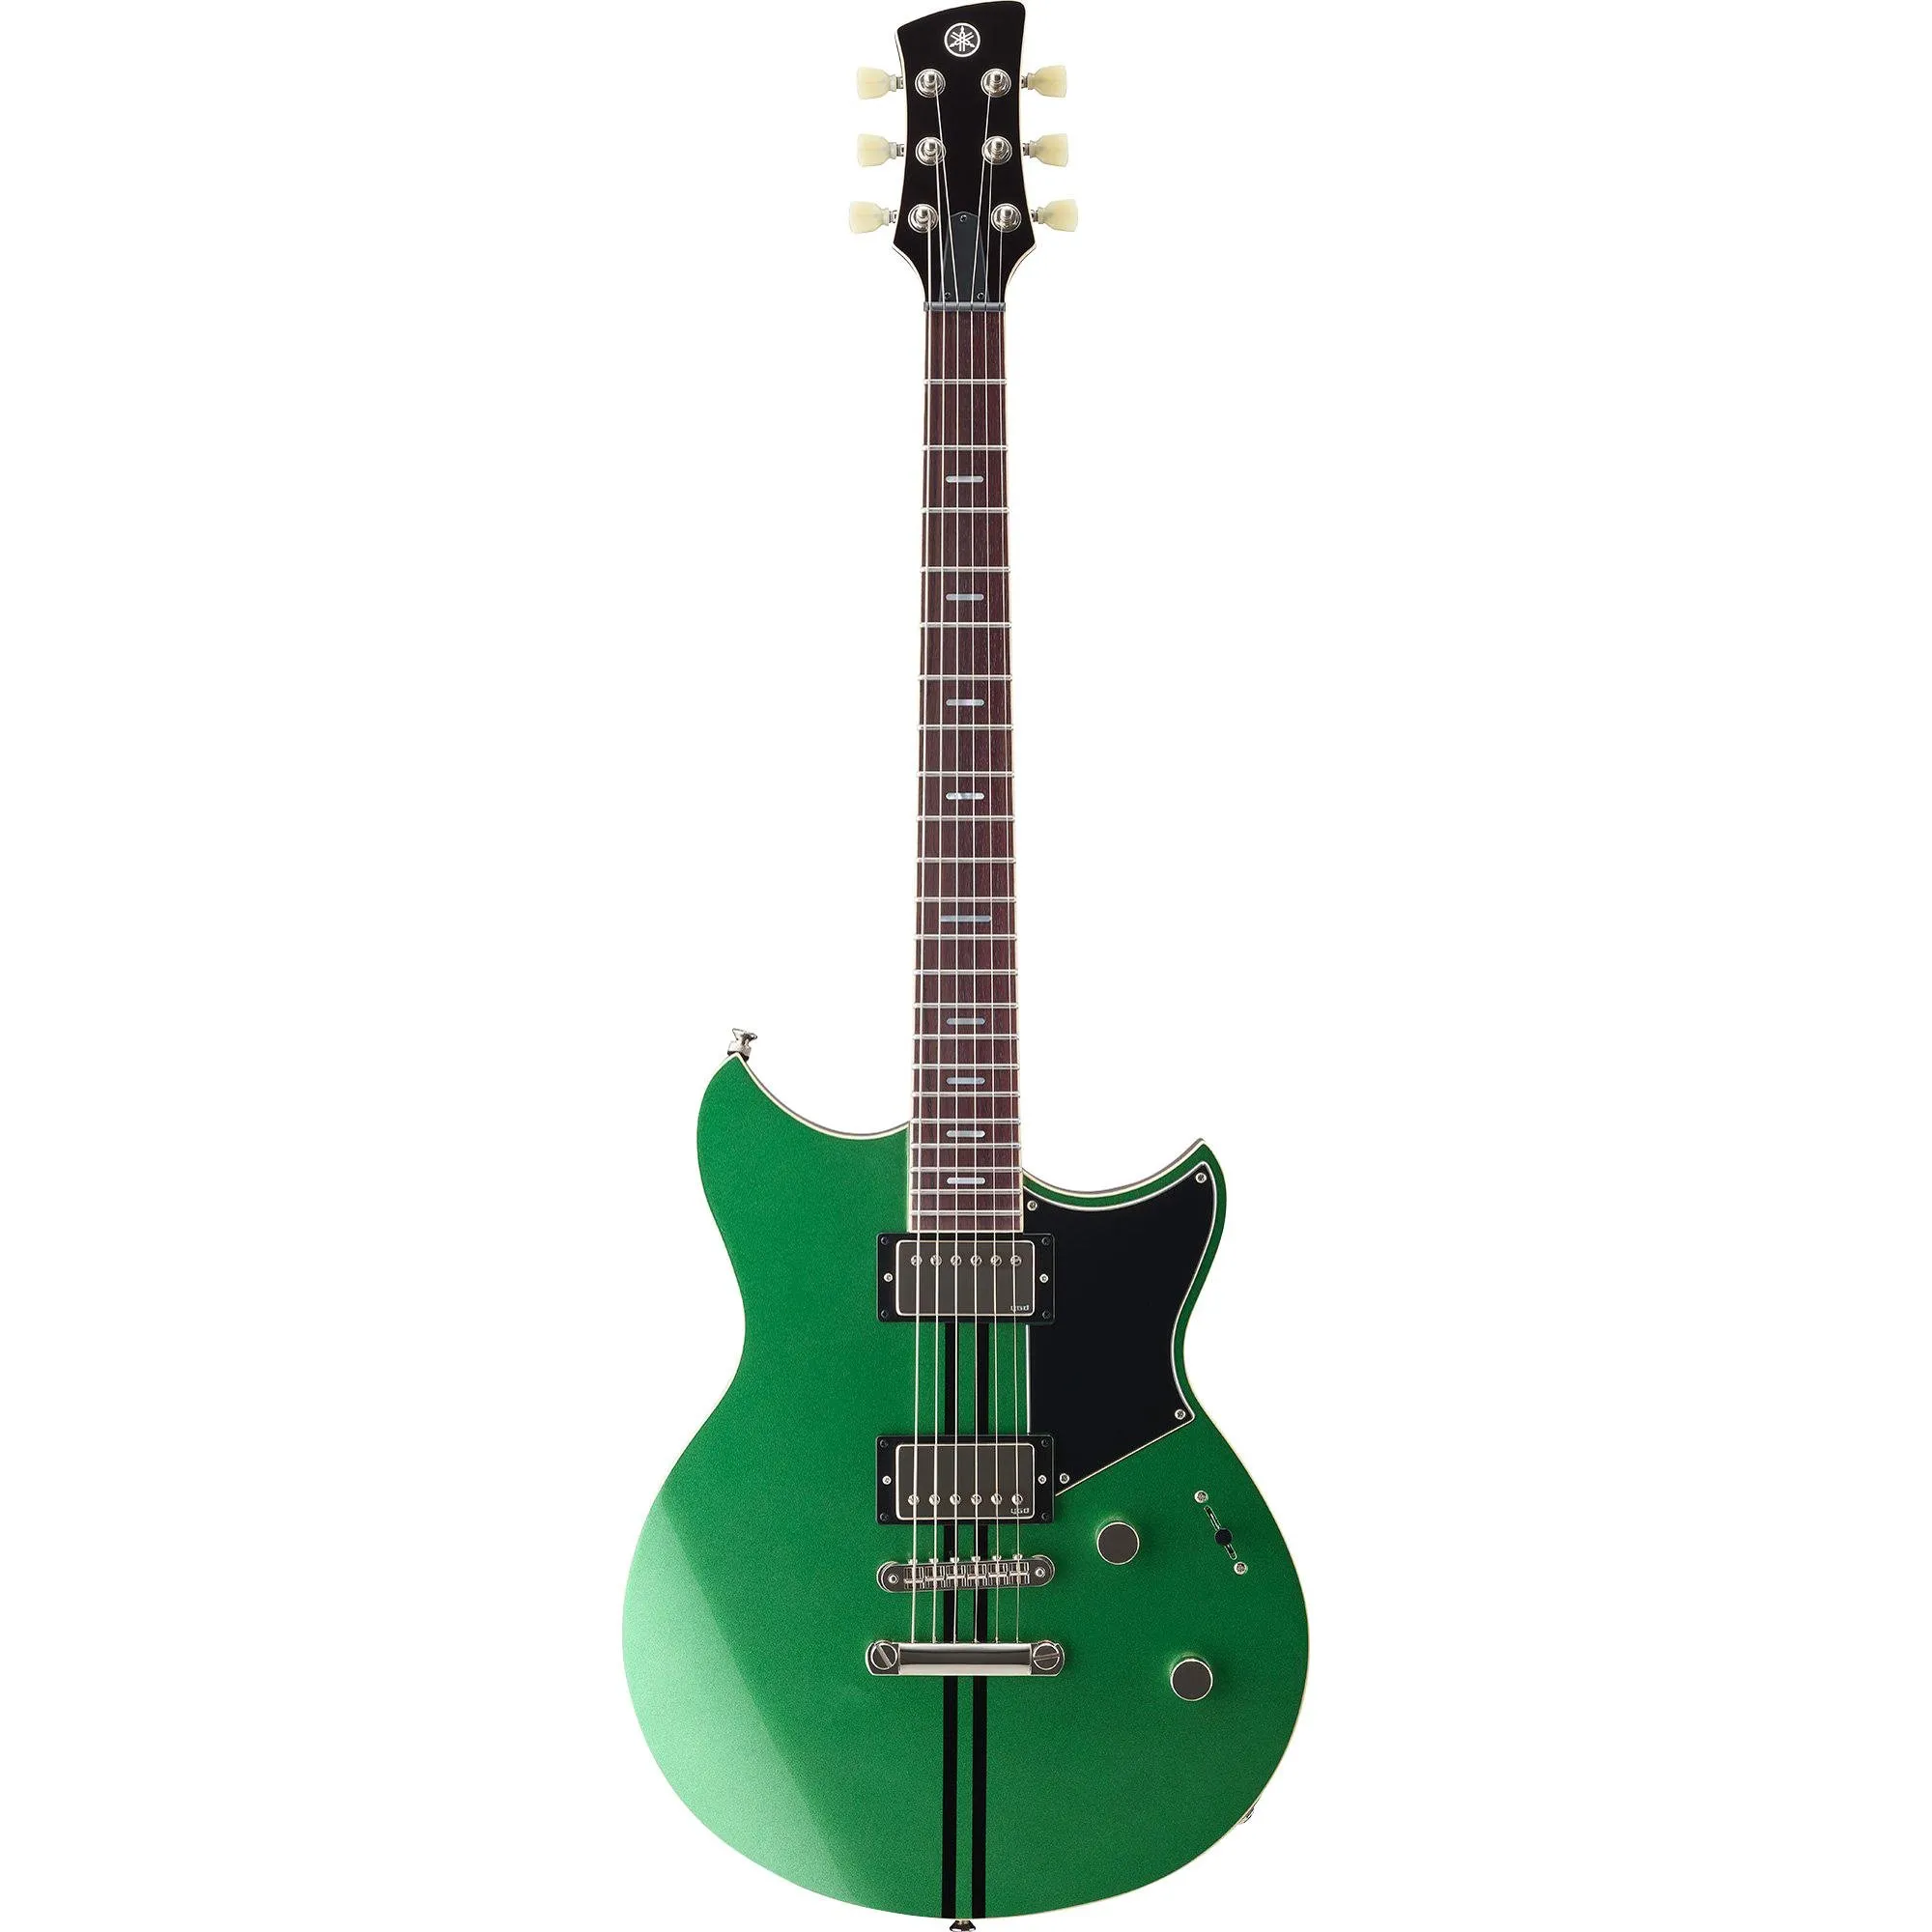 Guitarra Yamaha Revstar RSS 20 Flash Green por 7.288,99 à vista no boleto/pix ou parcele em até 12x sem juros. Compre na loja Mundomax!